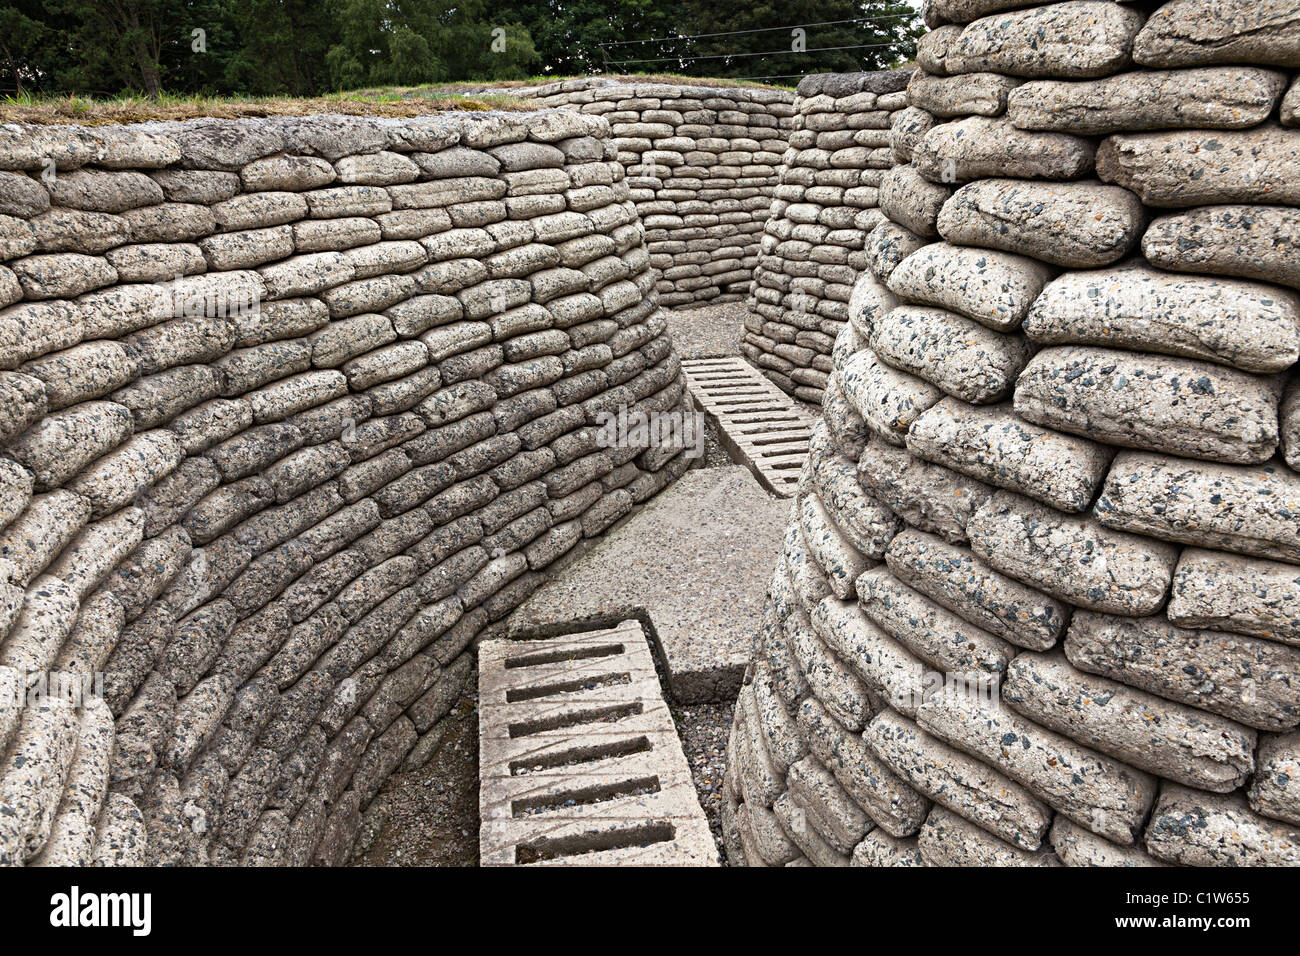 Vie des tranchées de la Première Guerre mondiale conservées sur la crête de Vimy, France Banque D'Images